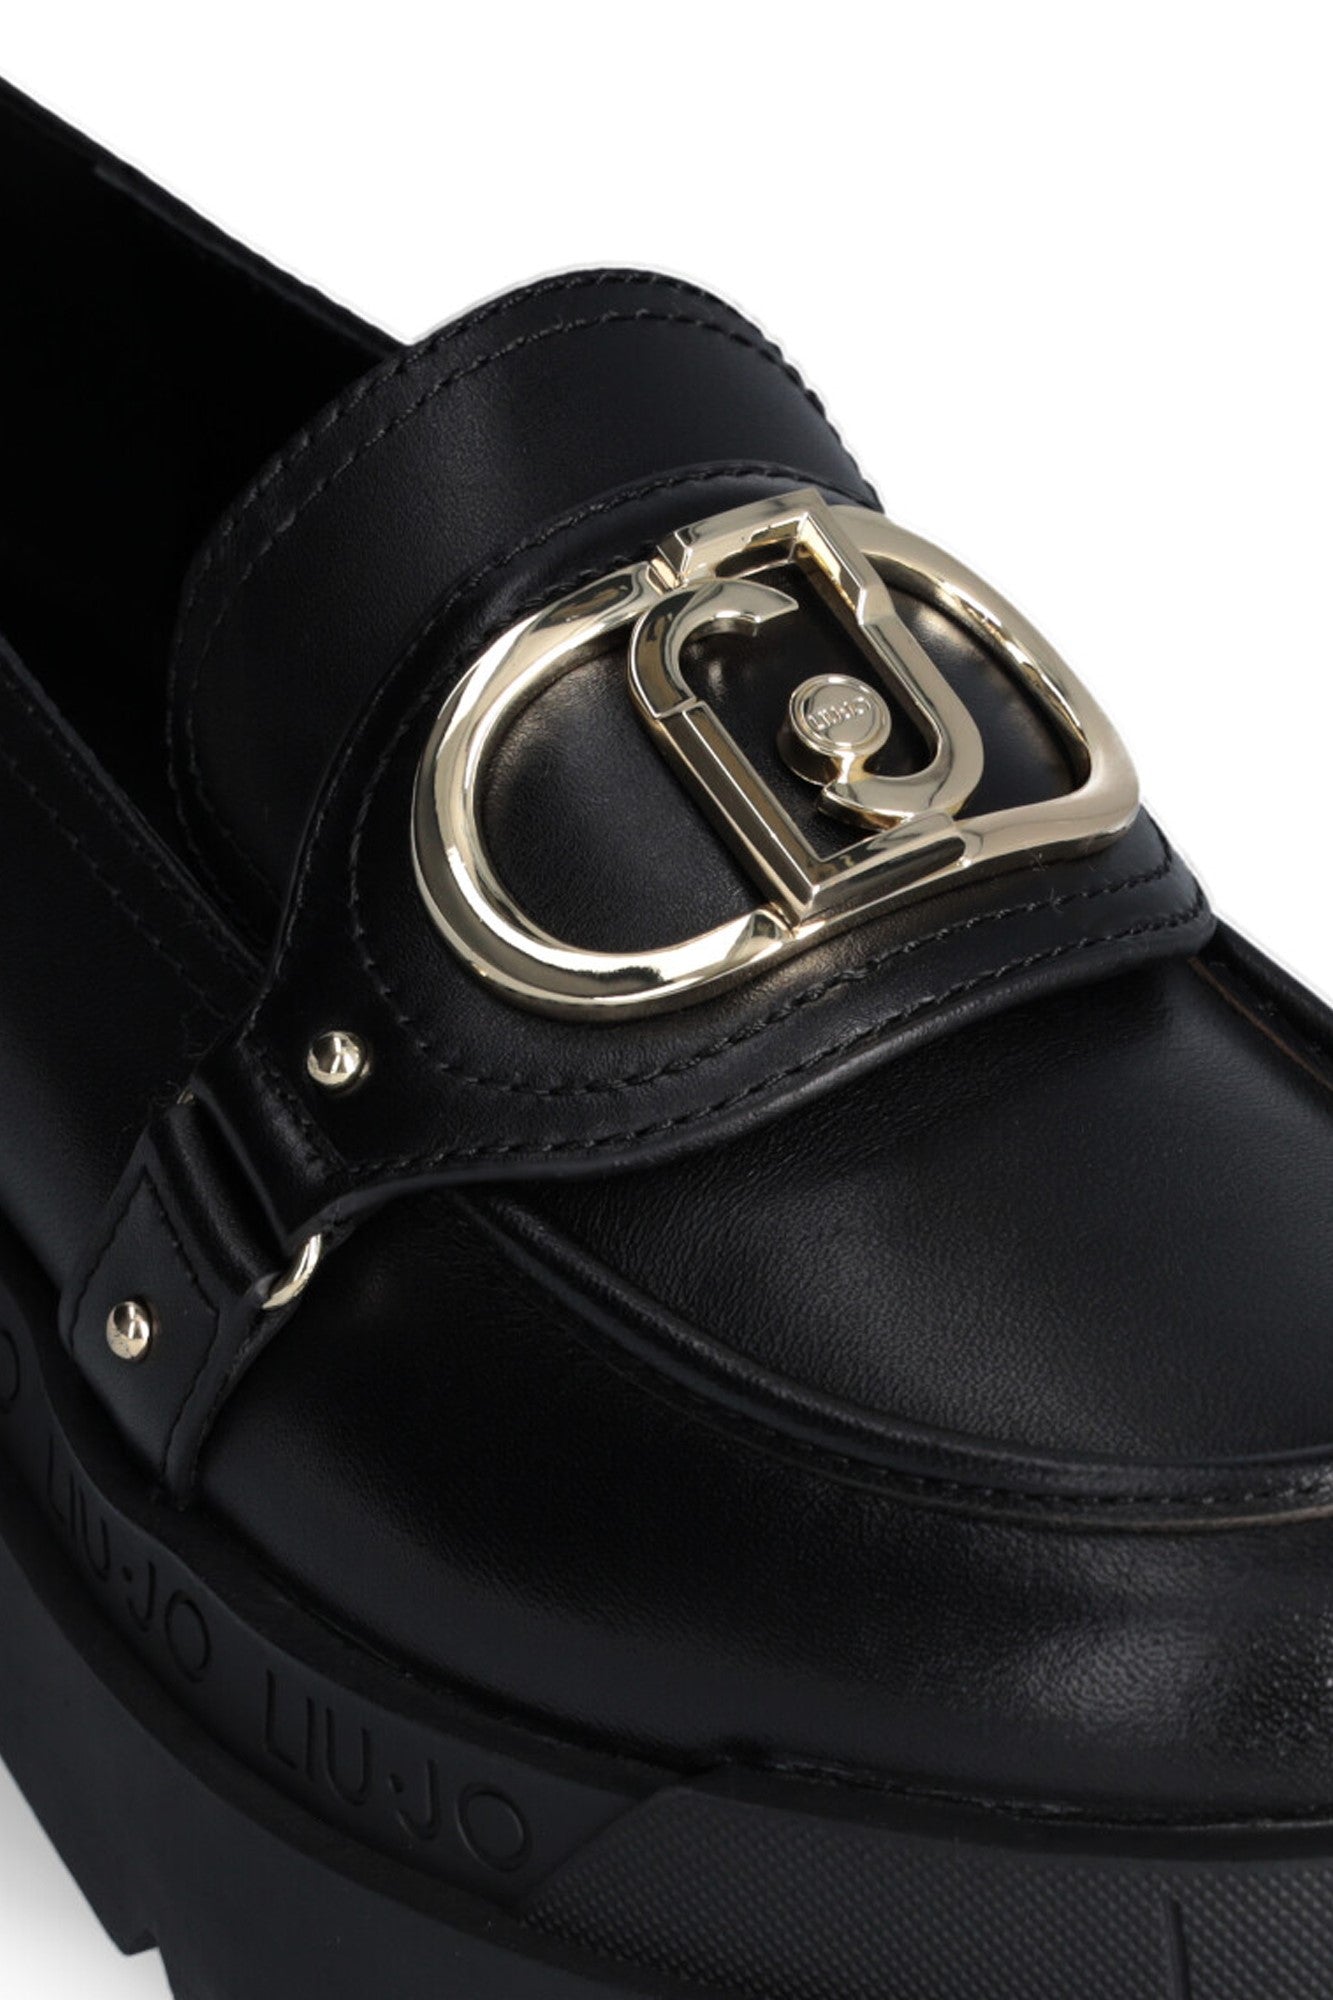 Pantofi Liu Jo de dama negrii din piele cu siret si logo metalic auriu INCALTAMINTE LIU JO   